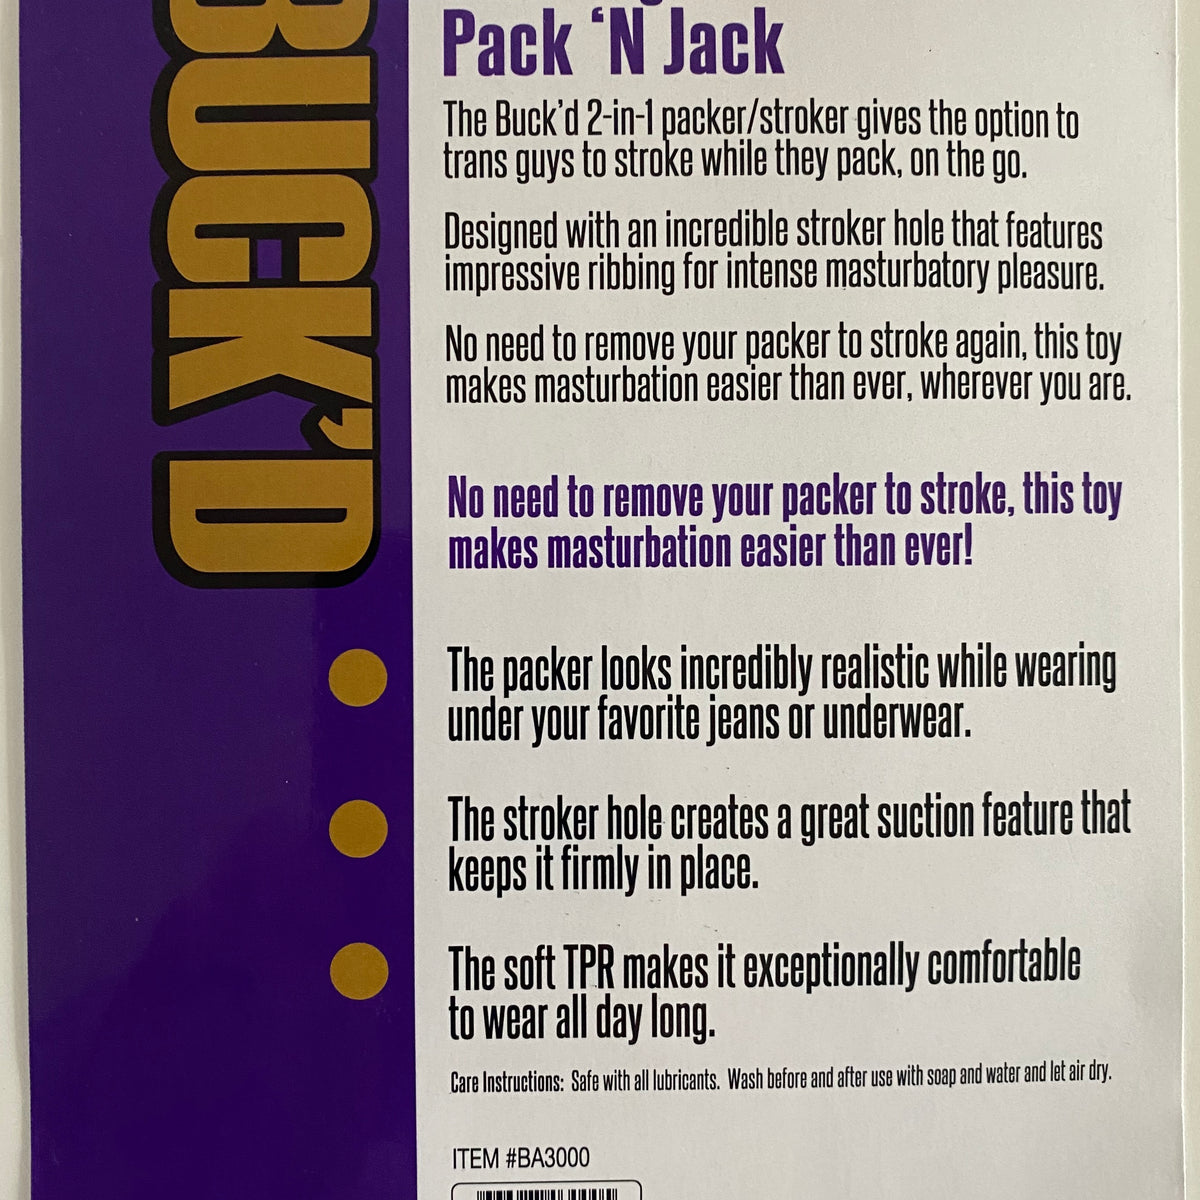 BUCK'D Packer/Stroker